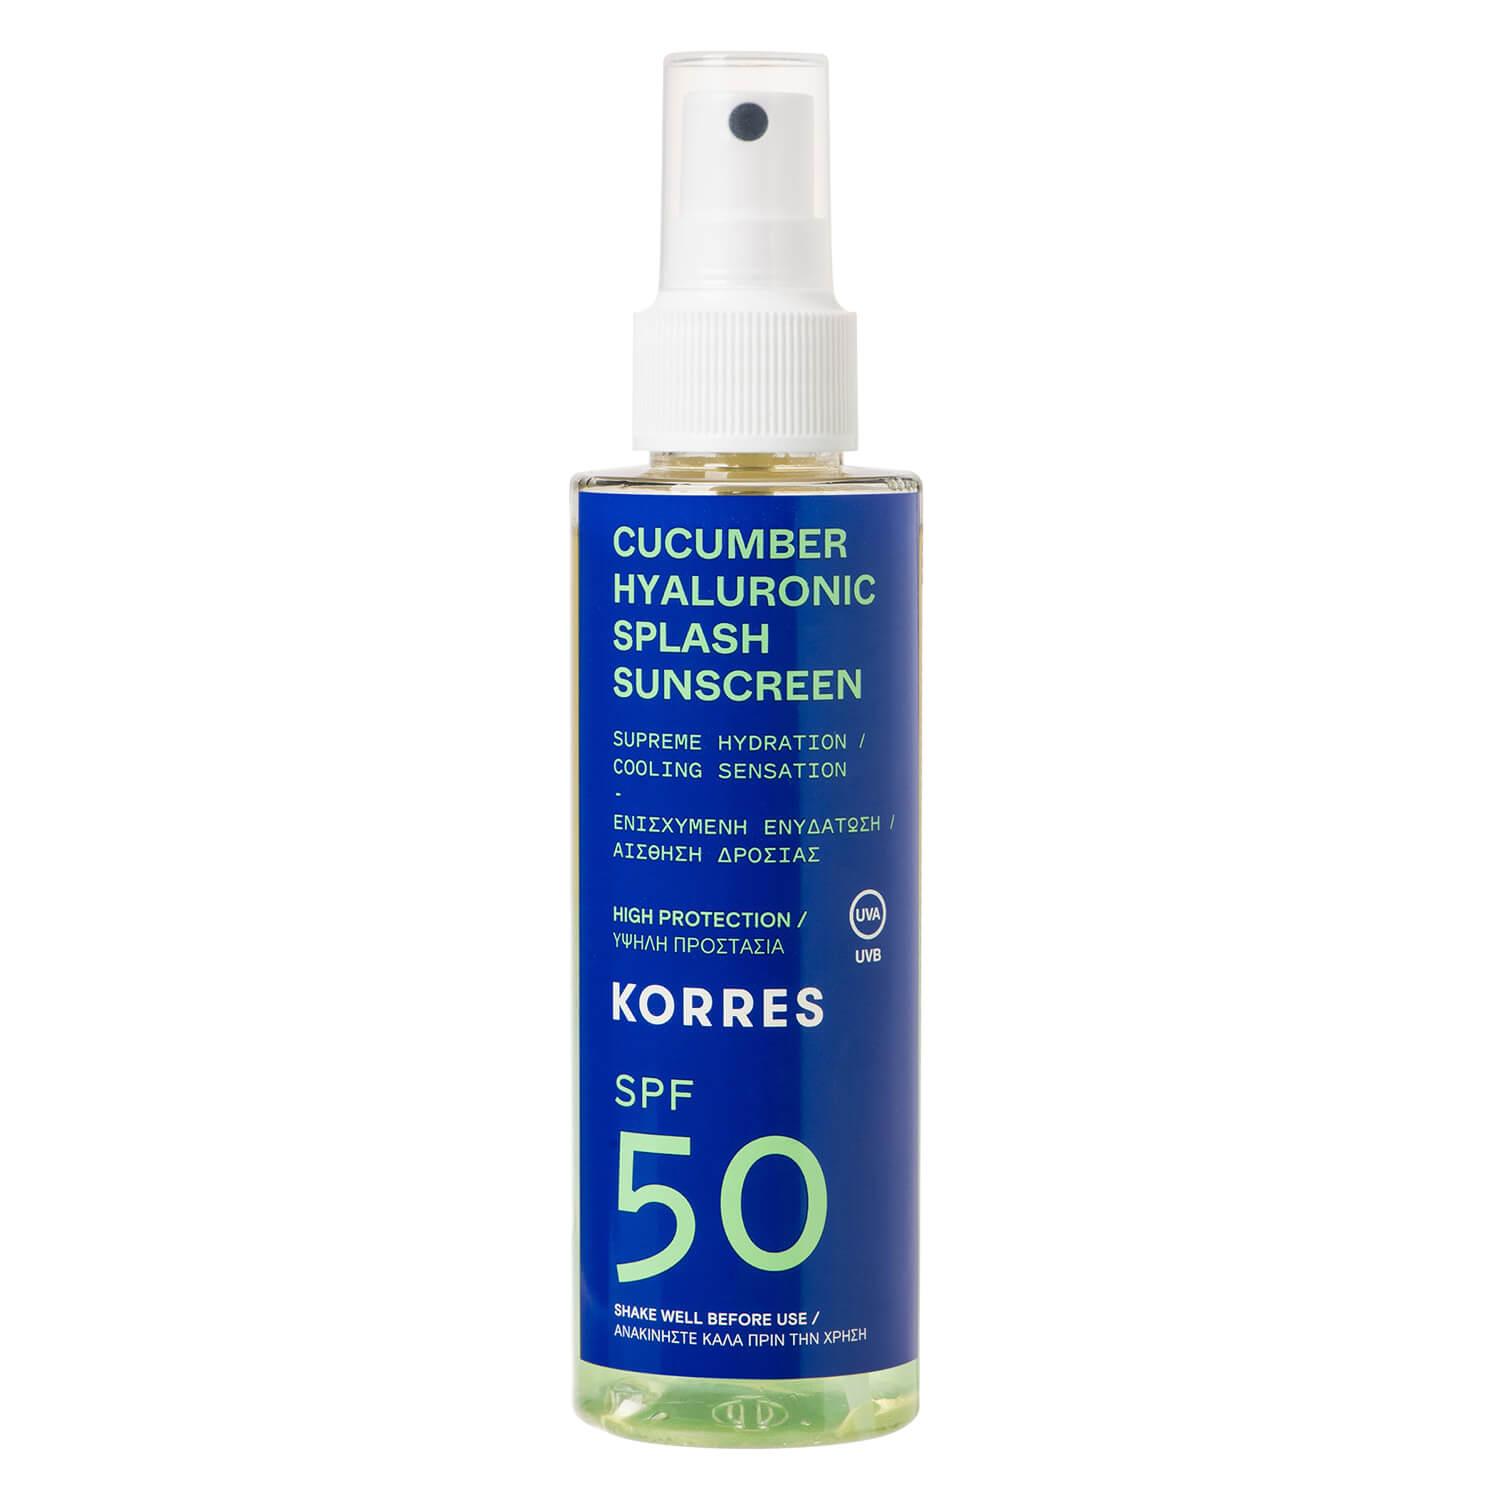 Korres Care - Cucumber Hyaluronic Splash Sunscreen SPF50